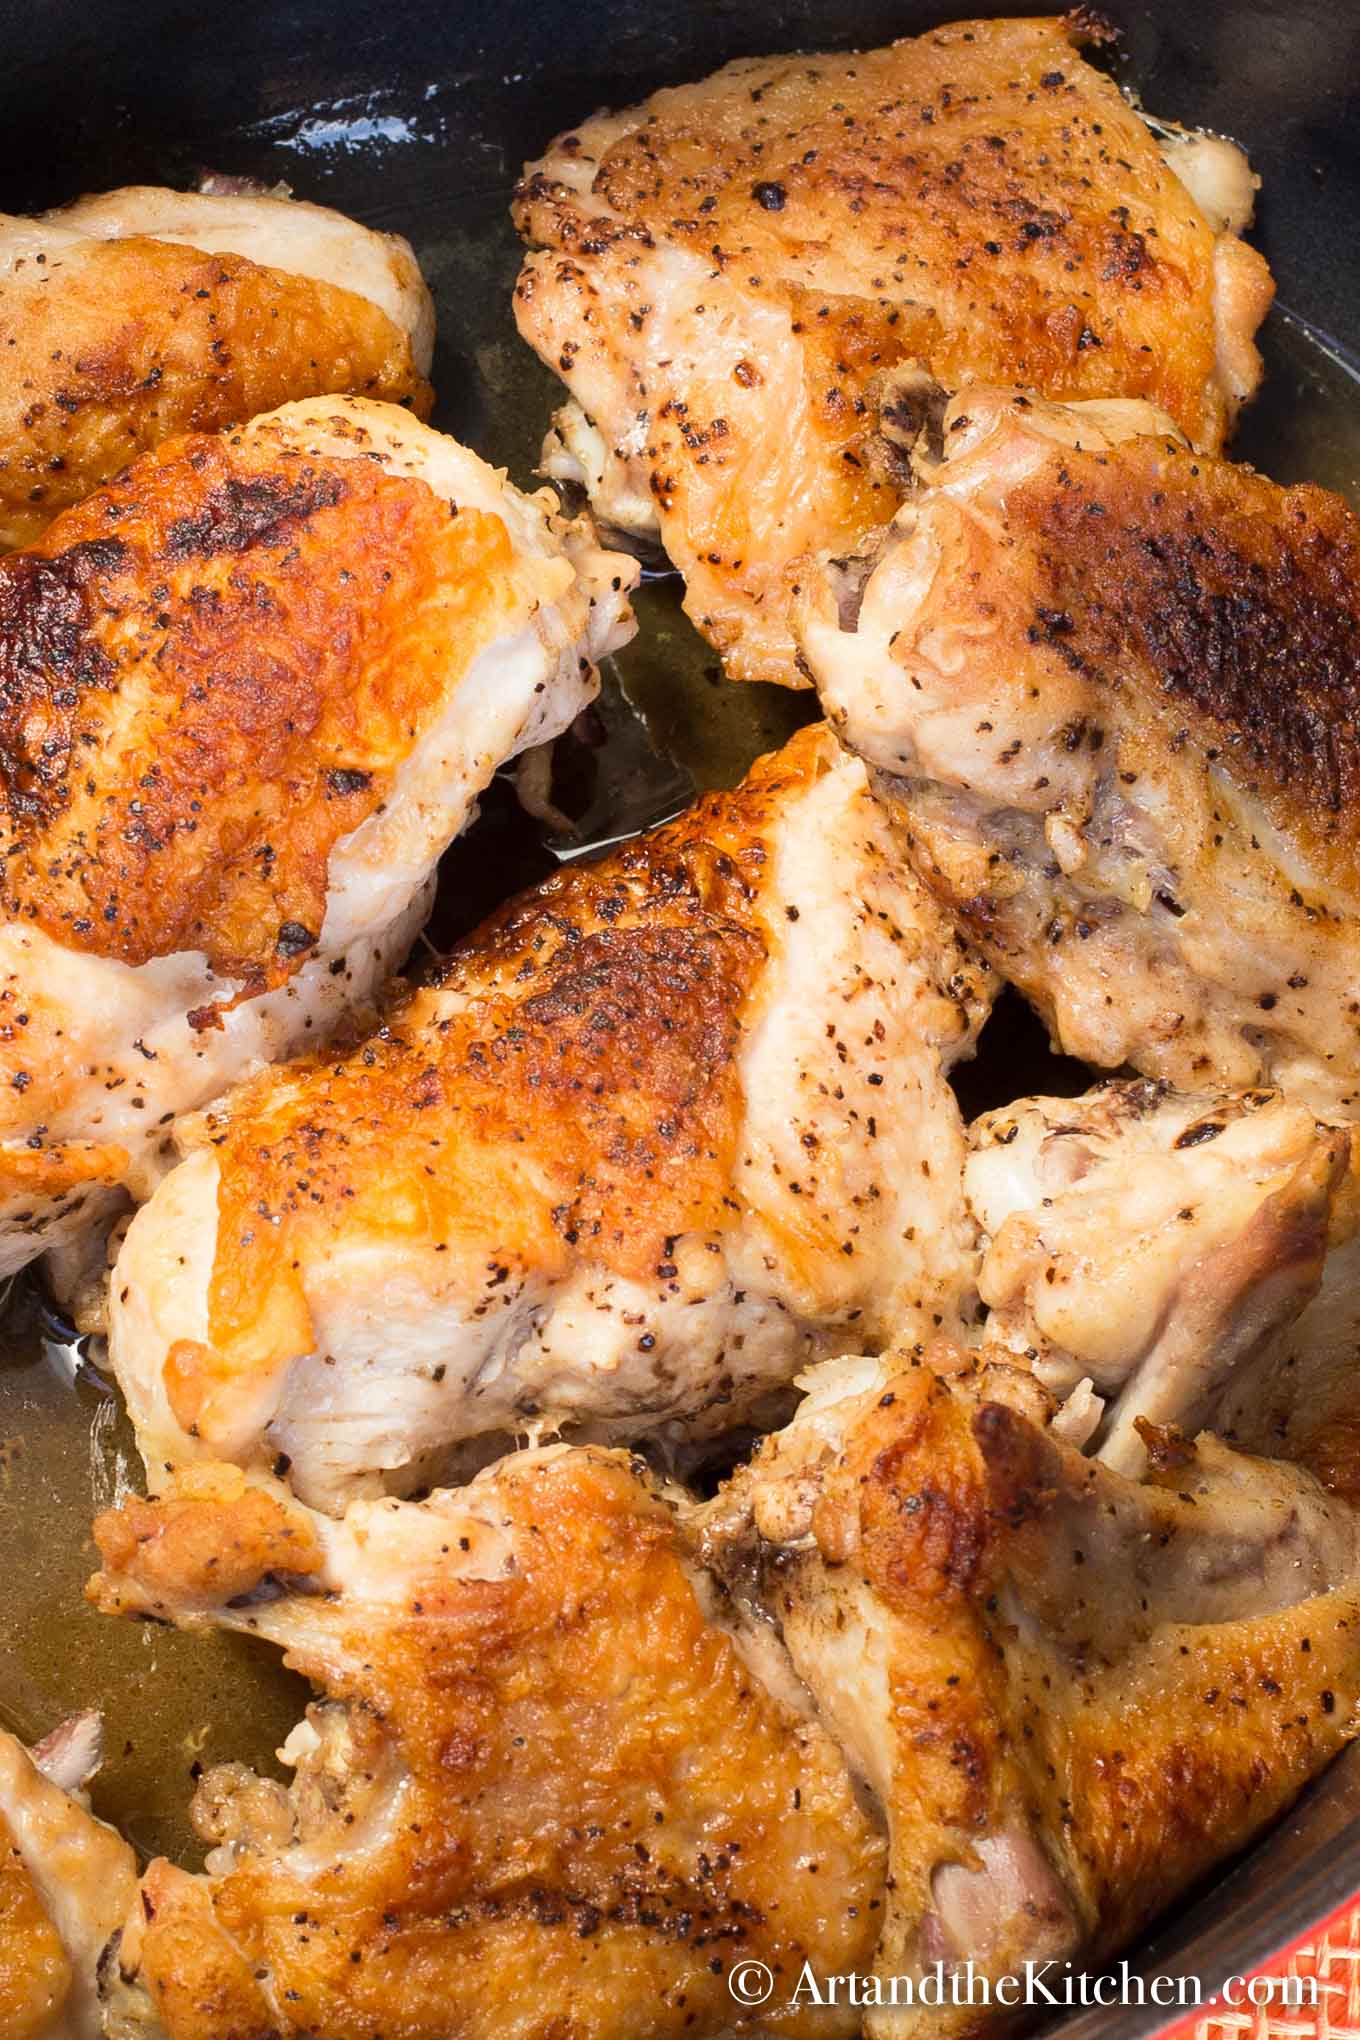 Golden brown roasted chicken pieces